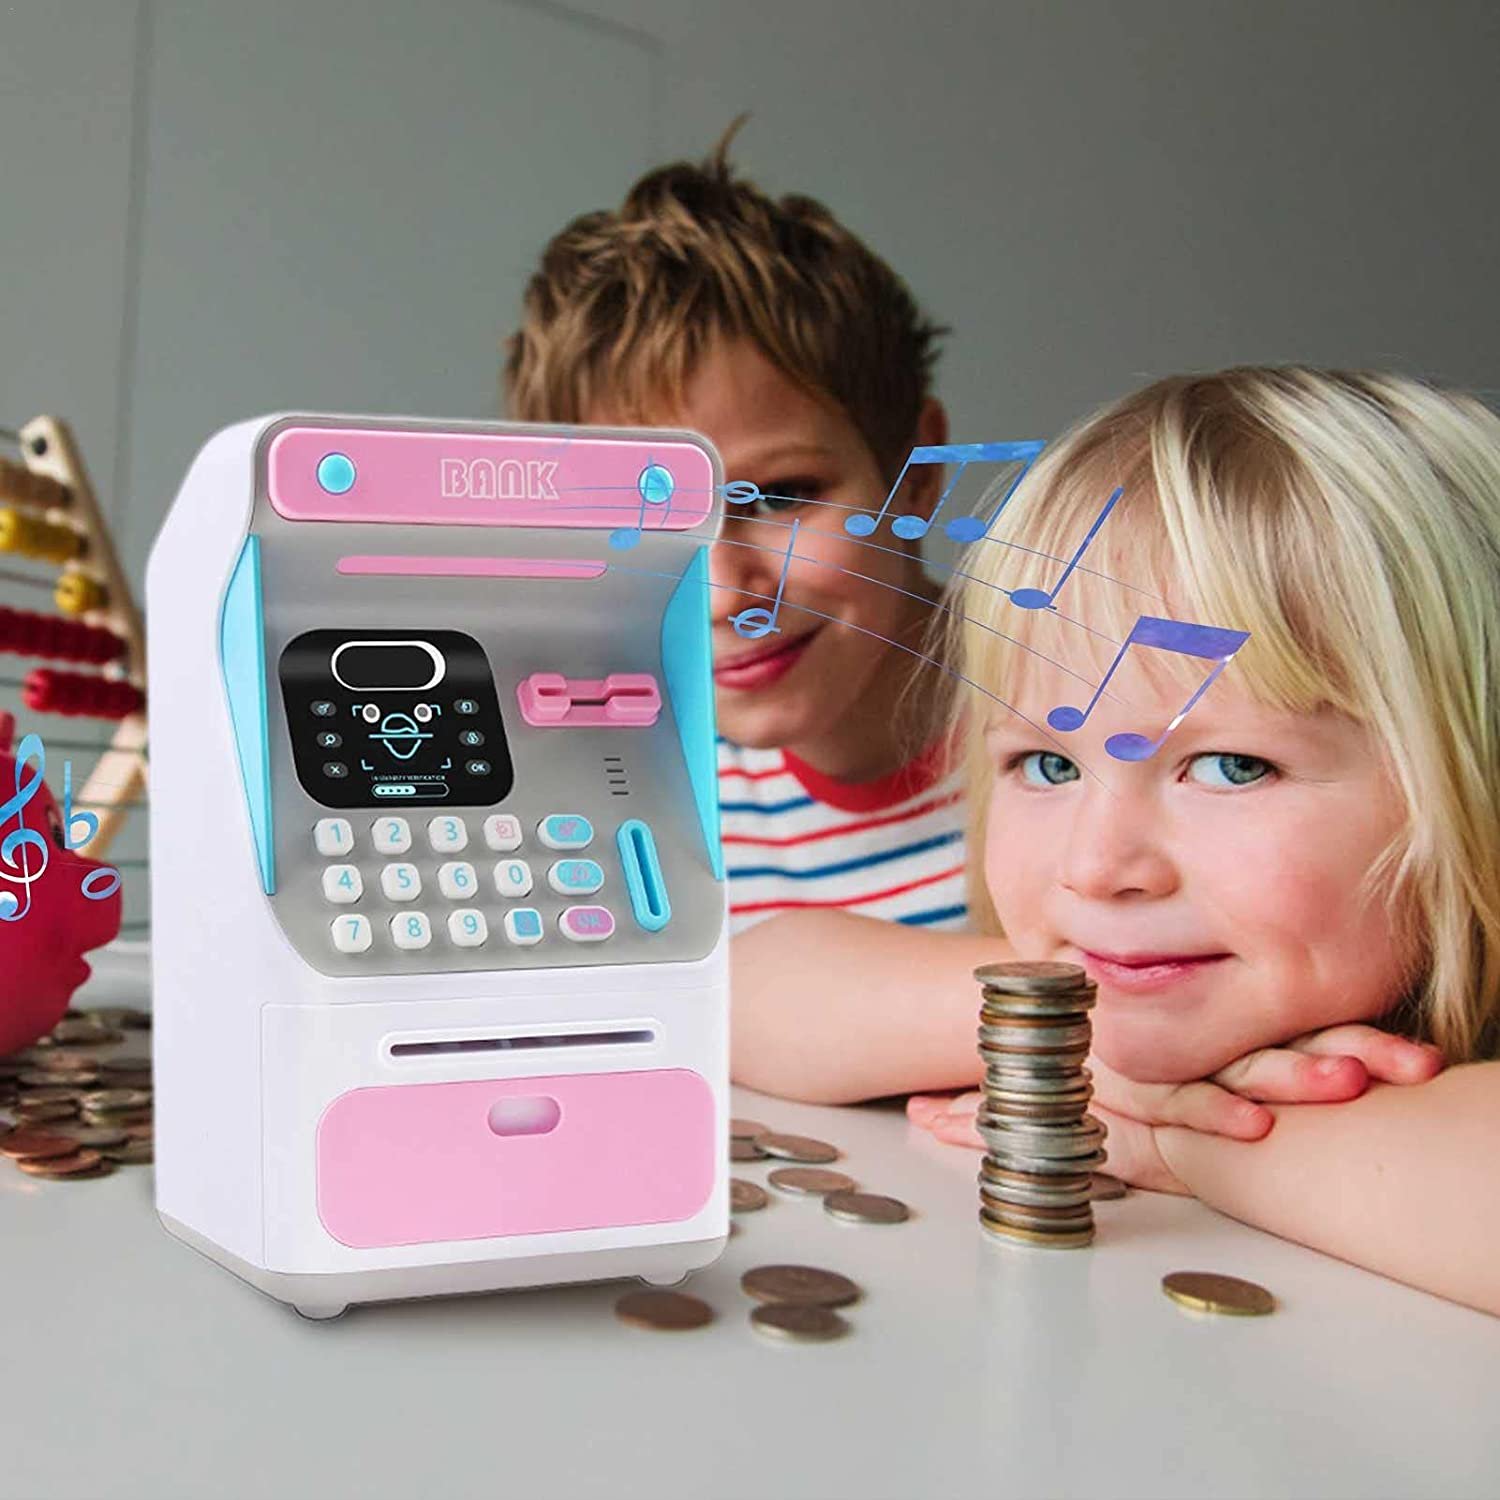  Alcancía Electrónica Simulación De Reconocimiento Facial Máquina De Cajero Automático Banco De Ahorro Electrónico, Juguete para Niños